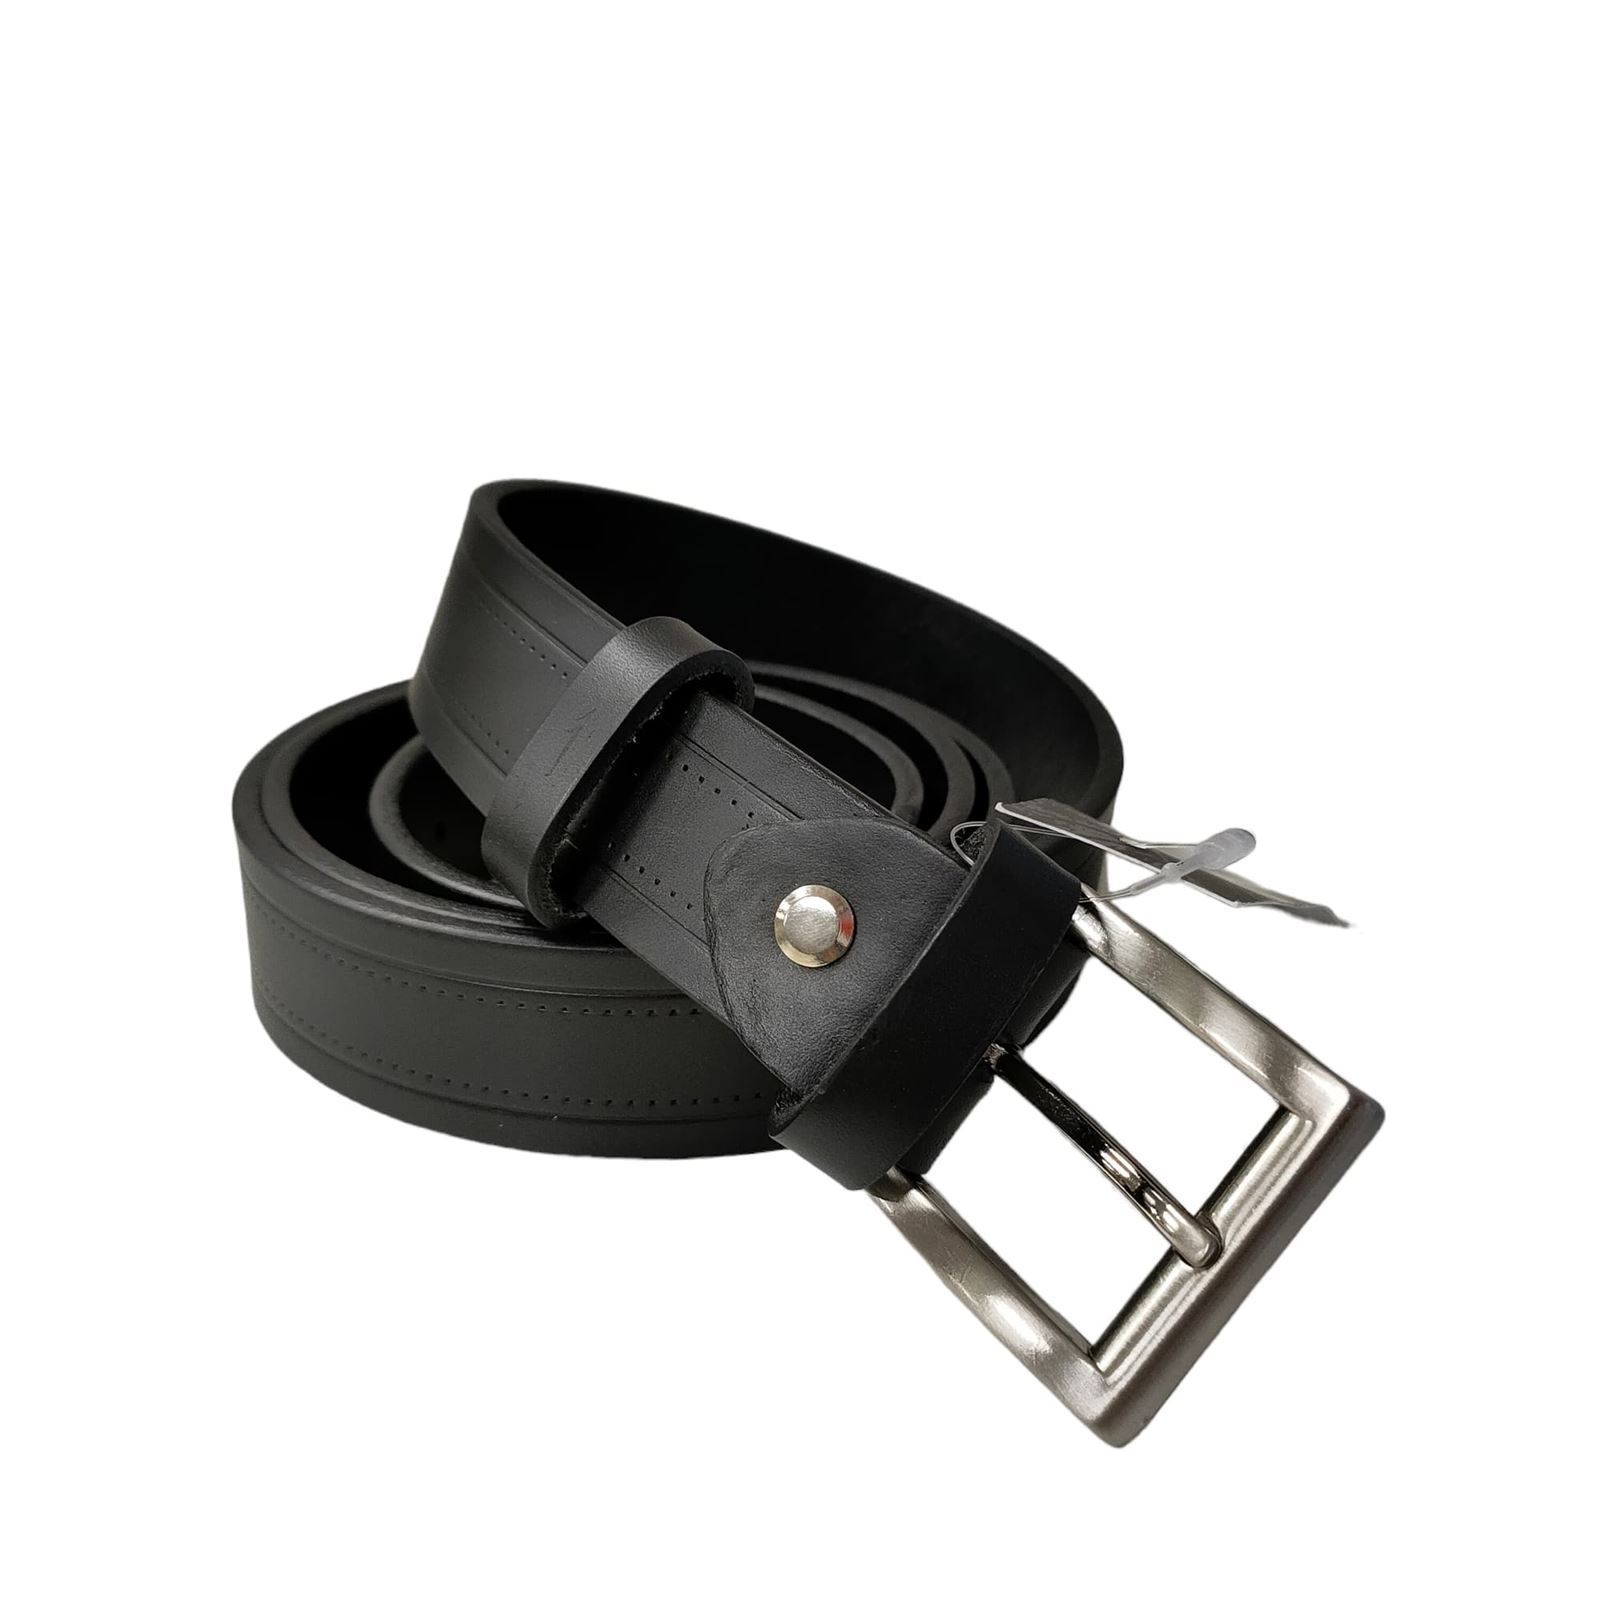 Cinturón estrecho negro/cuero chico - Imagen 1